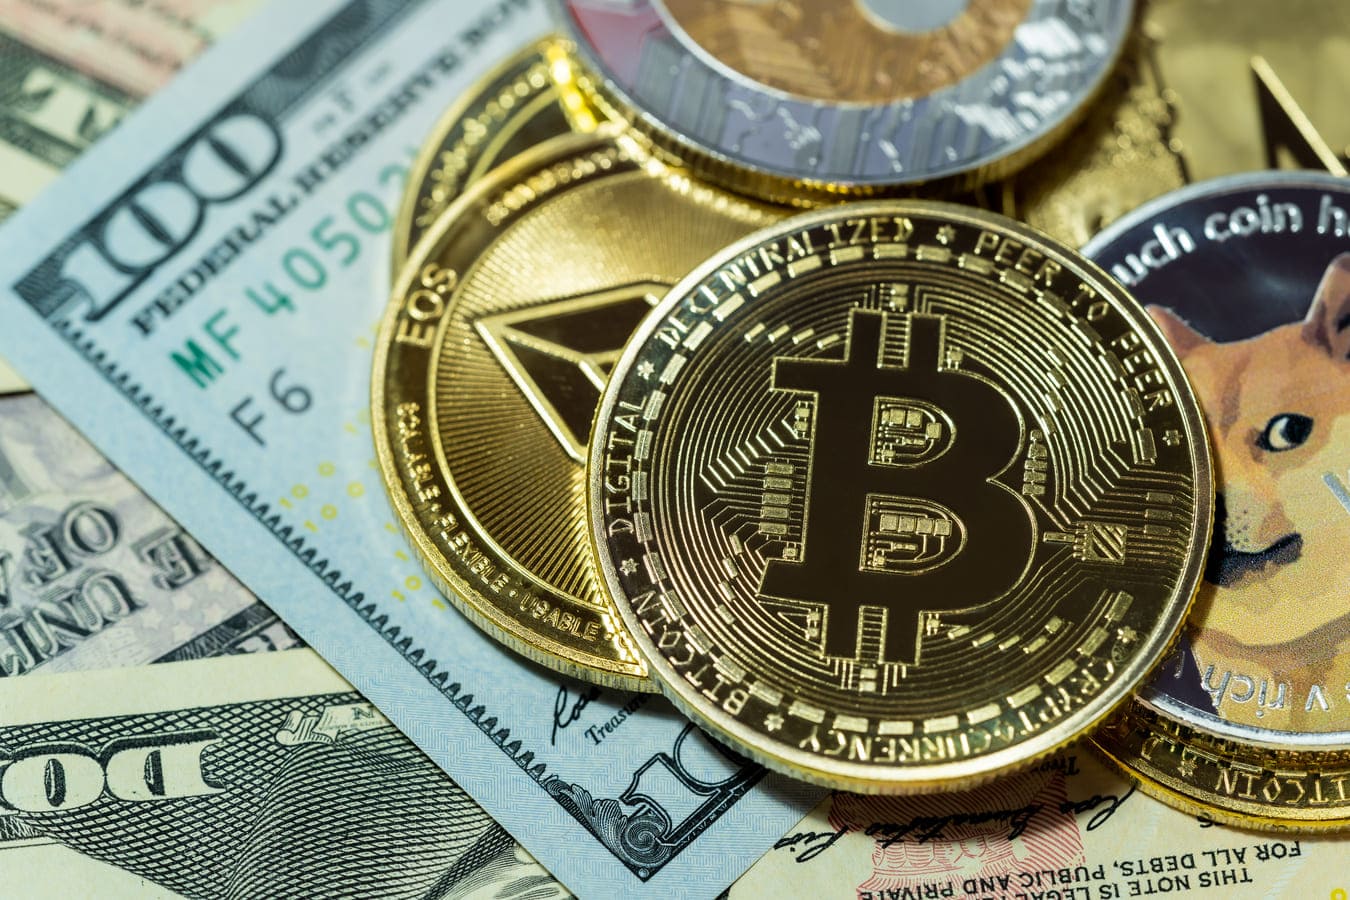 Justin Sun’s $1.1 Bid for Seized Bitcoin